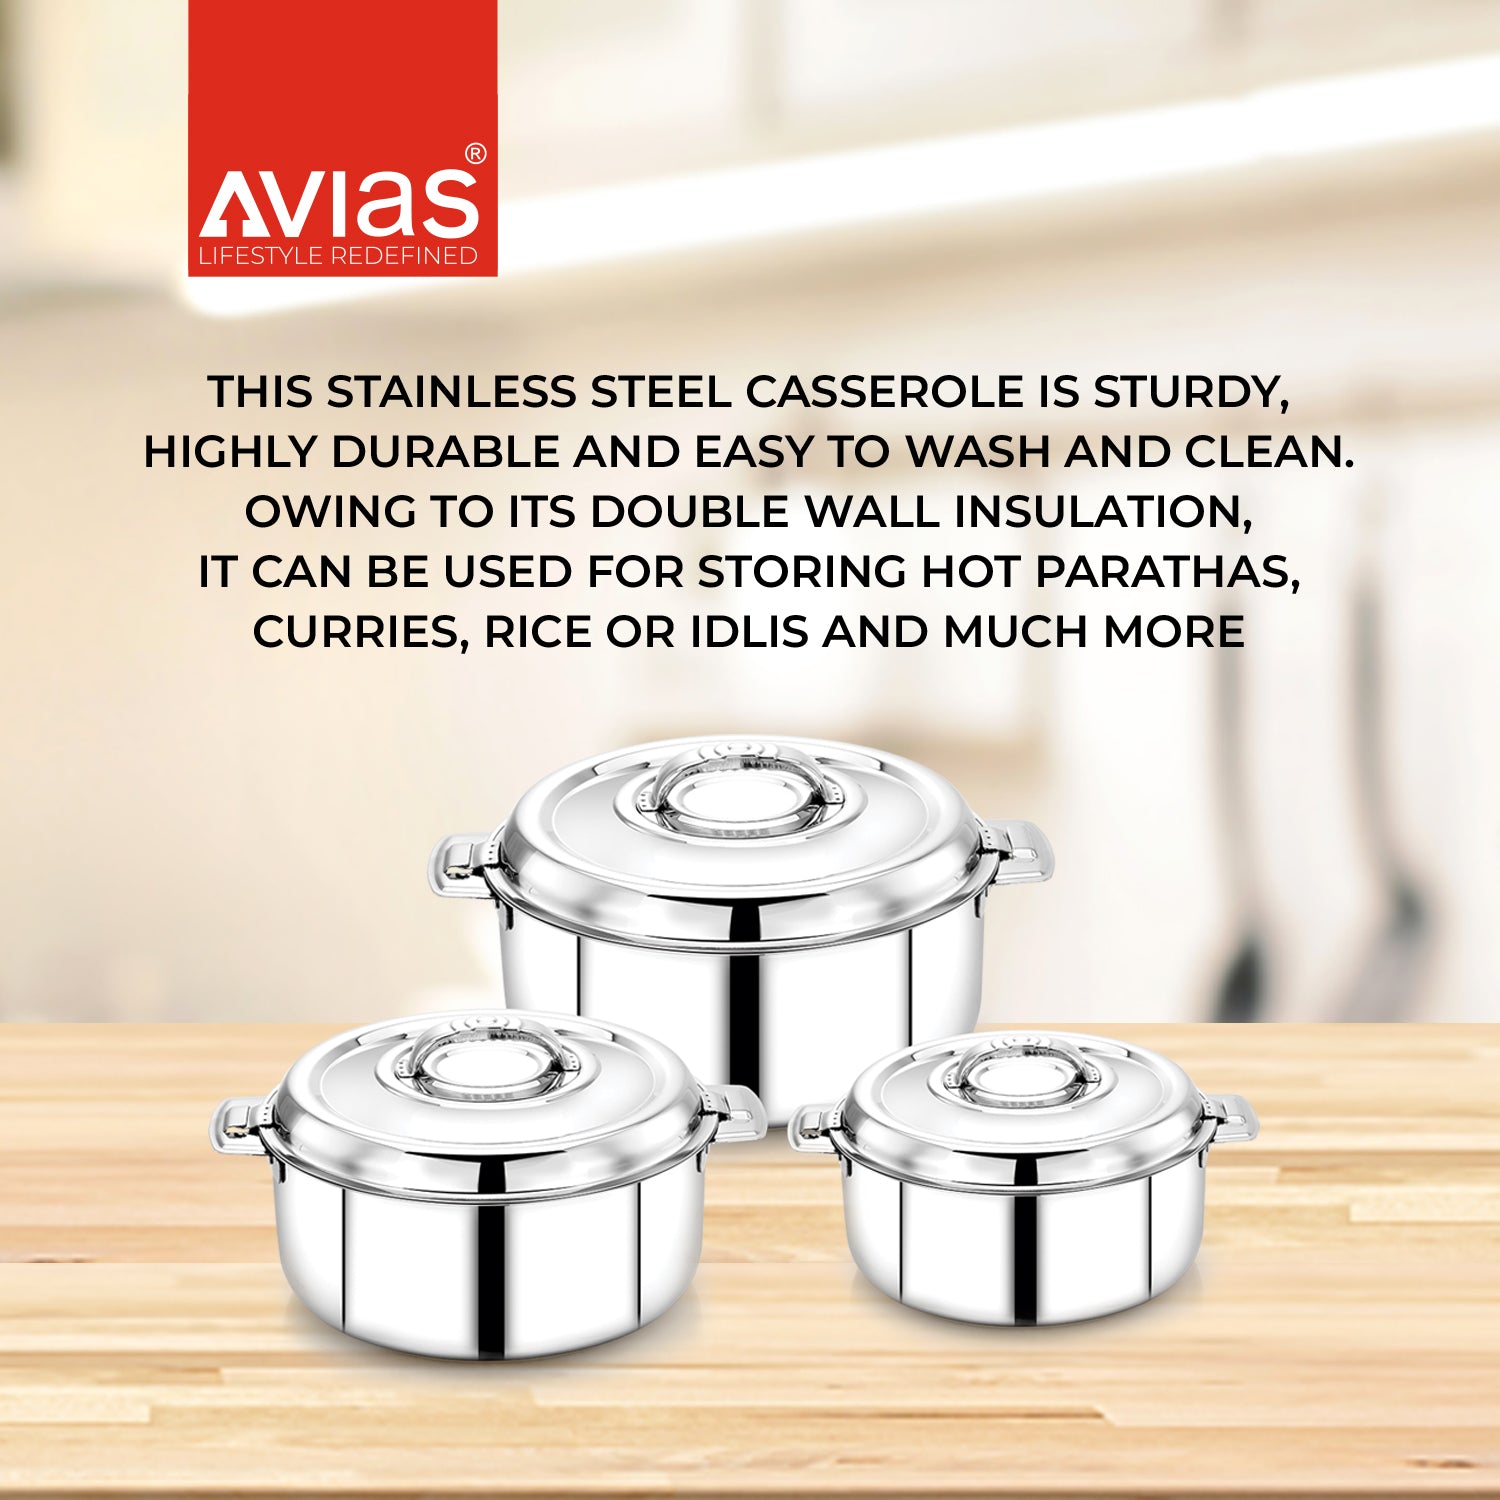 Avistar Gift set stainless steel casserole features.